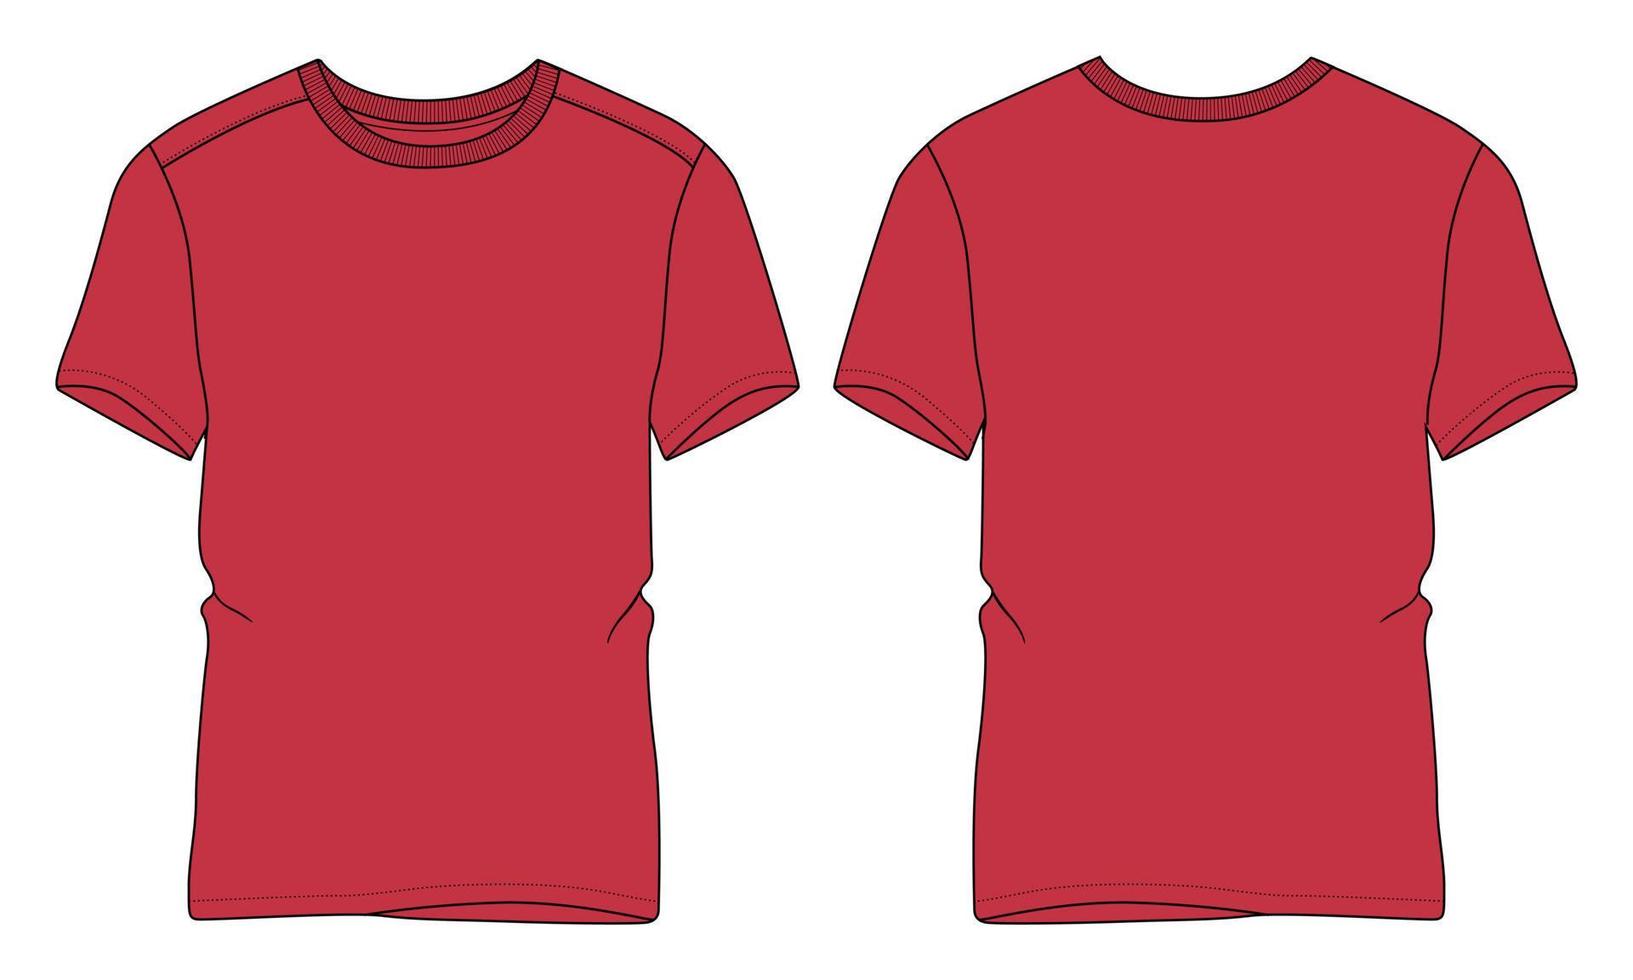 camiseta de manga curta técnica de moda desenho plano ilustração vetorial modelo de cor vermelha vetor